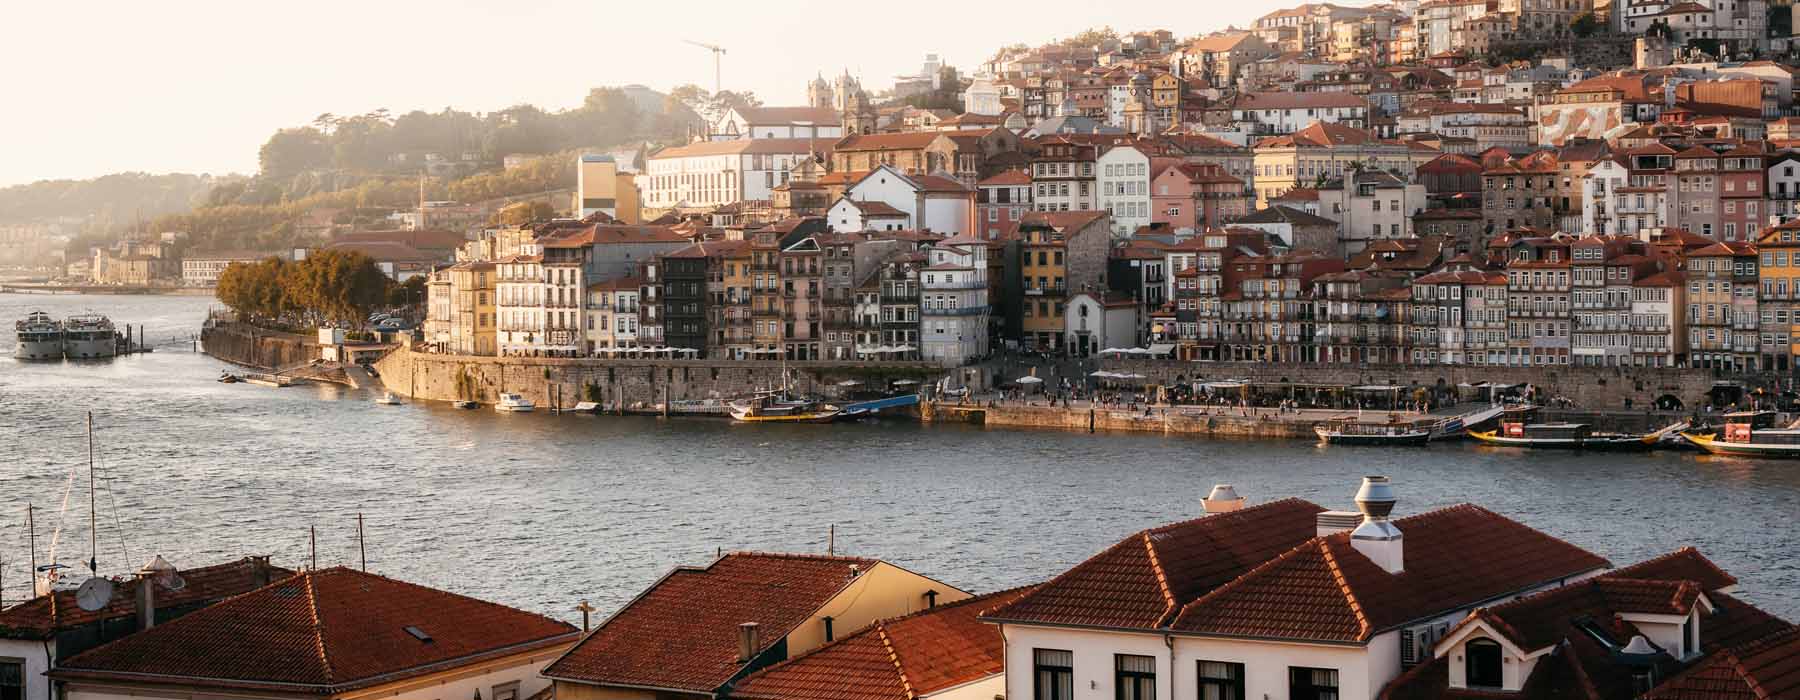 Portugal<br class="hidden-md hidden-lg" /> Responsible Travel